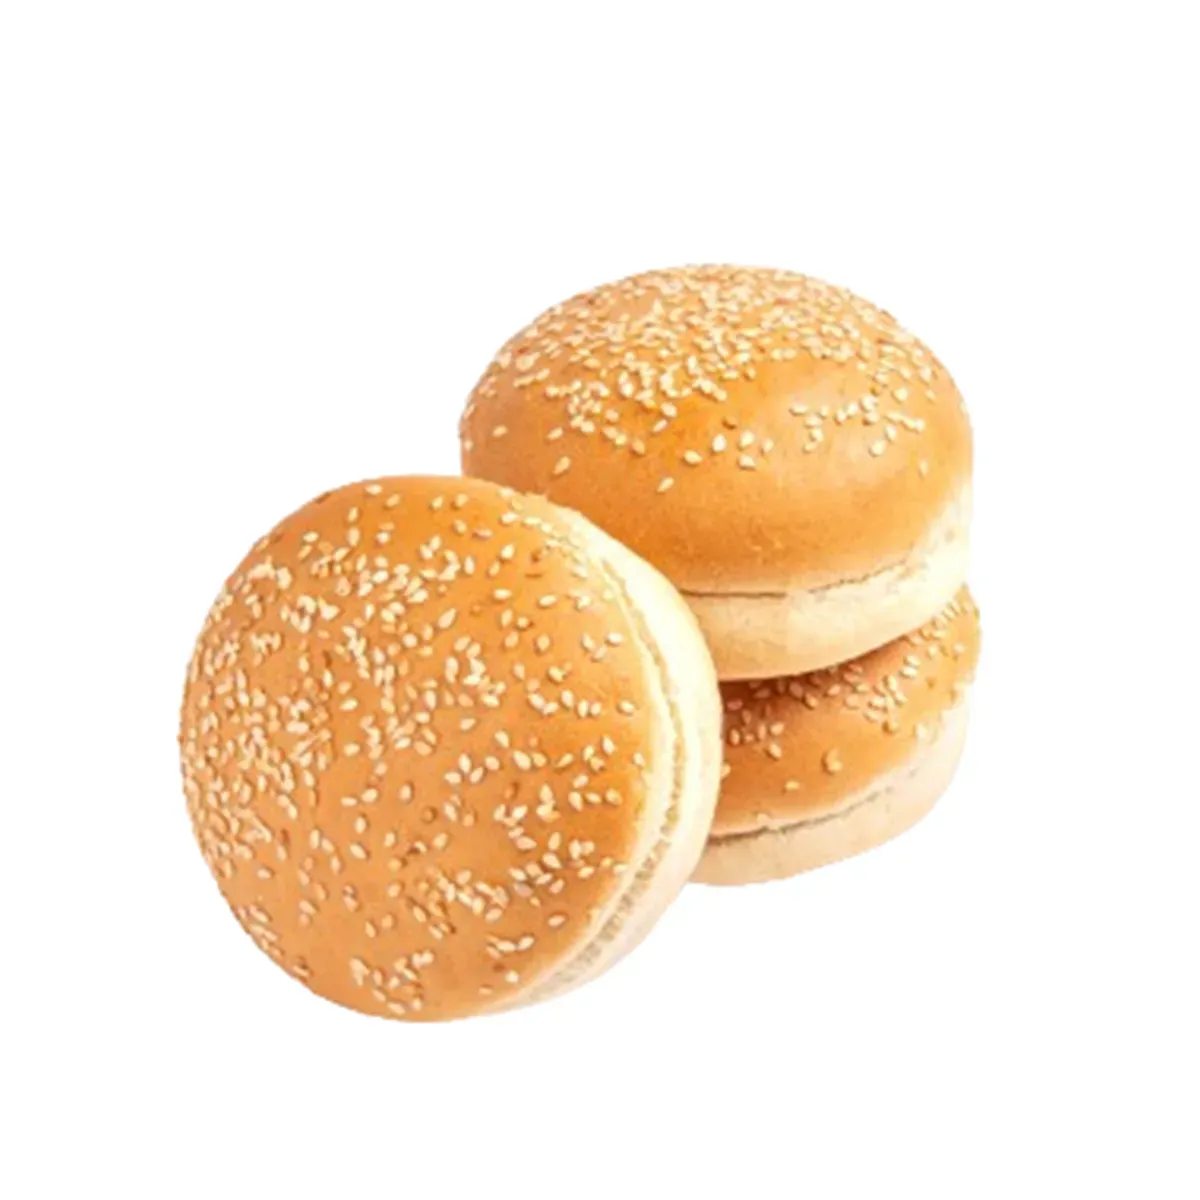 Burgerbun mit Sesam auf weißen Hintergrund